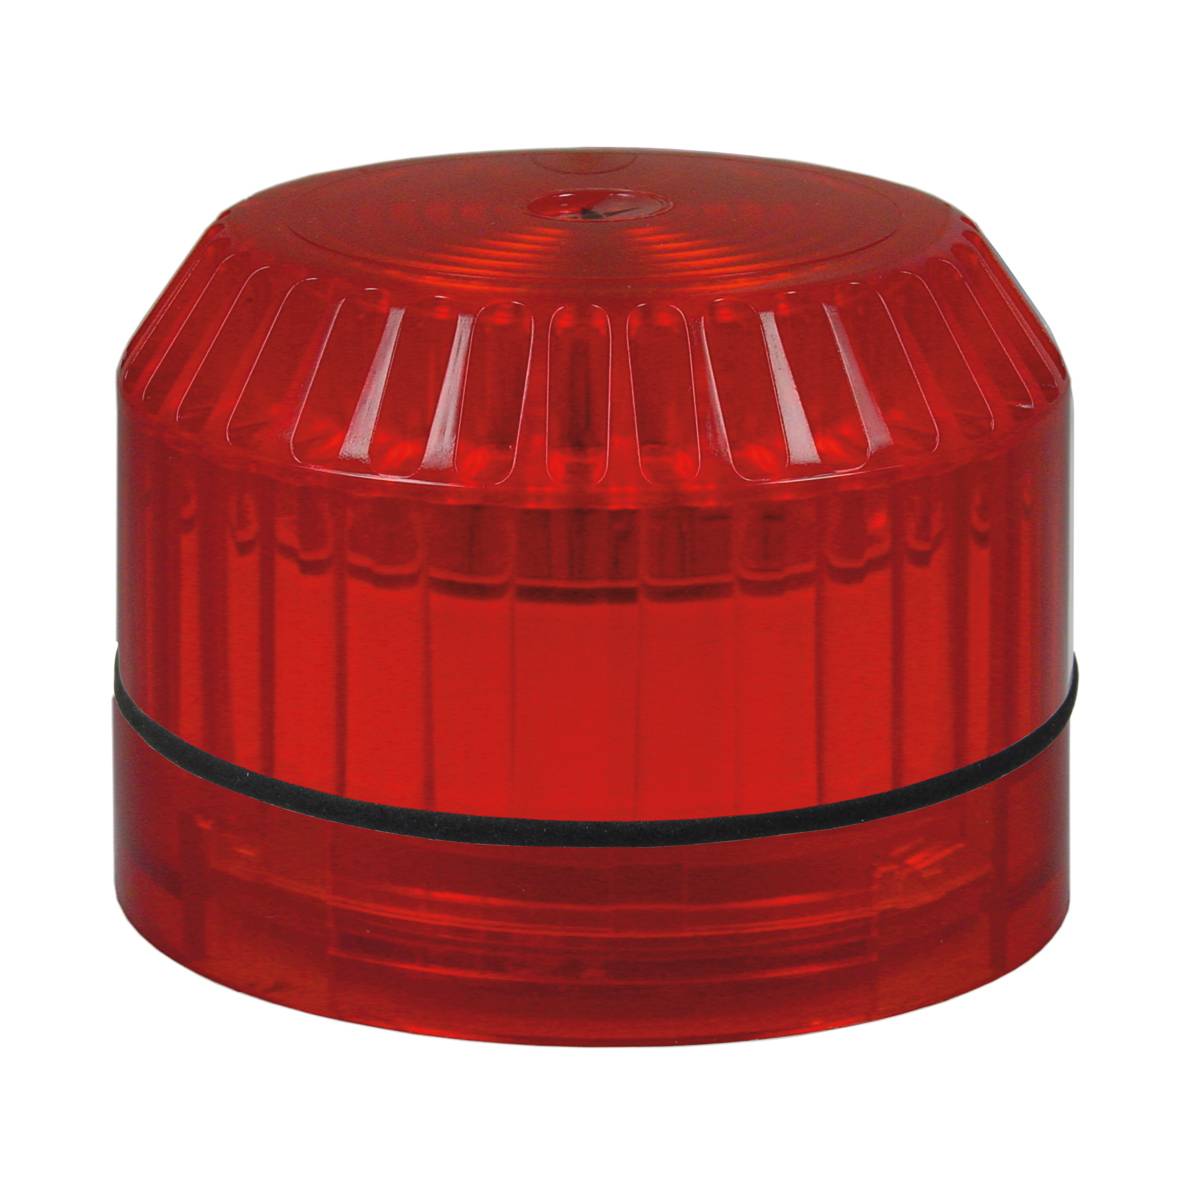 Strobe light Solex -red- SafeTechShop